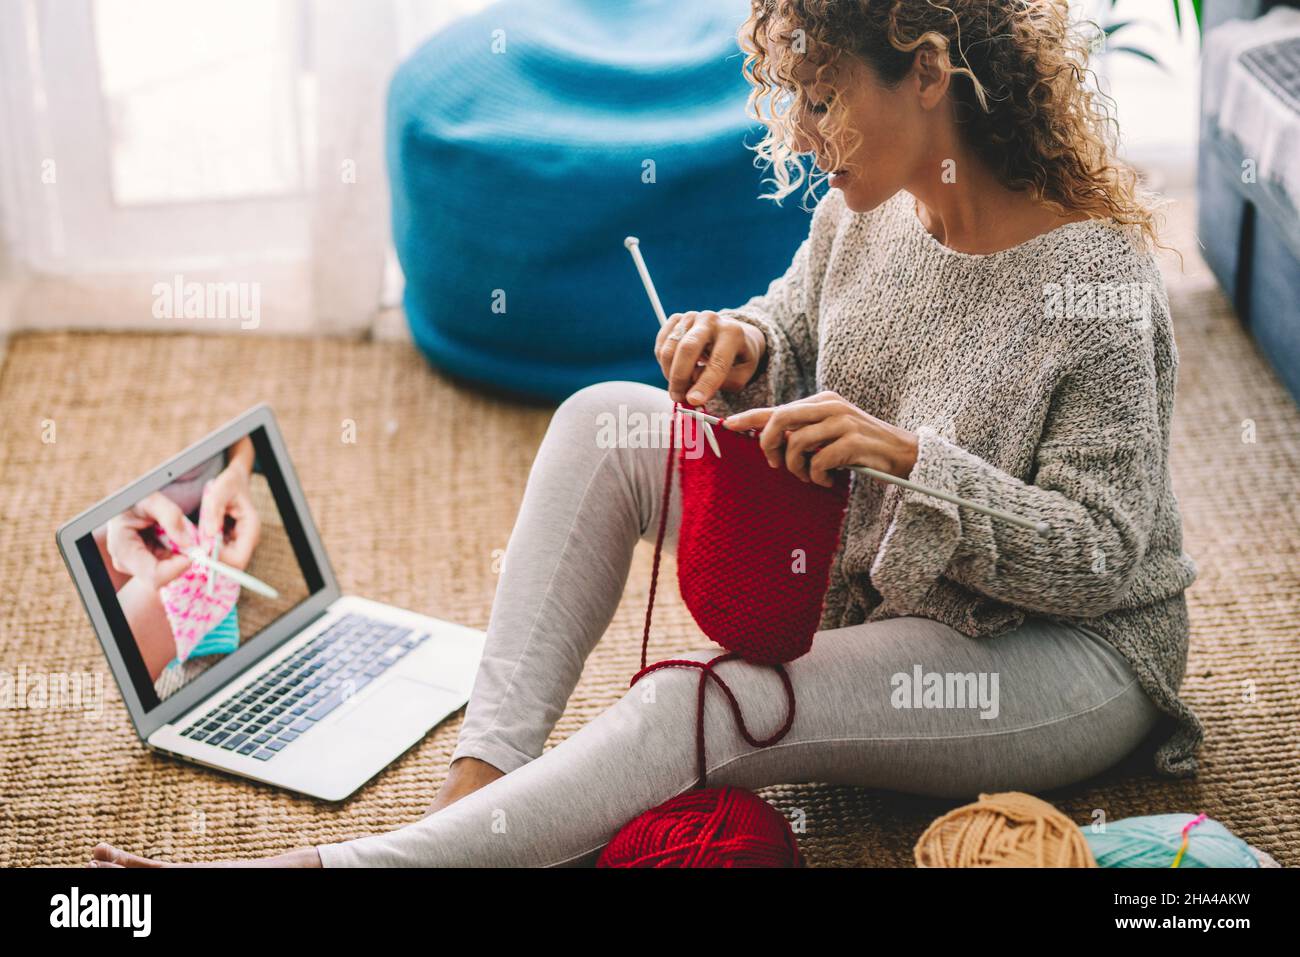 Eine Frau zu Hause auf dem Teppich sitzen Uhr online stricken Arbeit Tutorial und genießen Wollstricken Aktivität Hobby. Menschen und Online-Content-Klasse Konzept Lifestyle. Kreative weibliche Leben Stockfoto